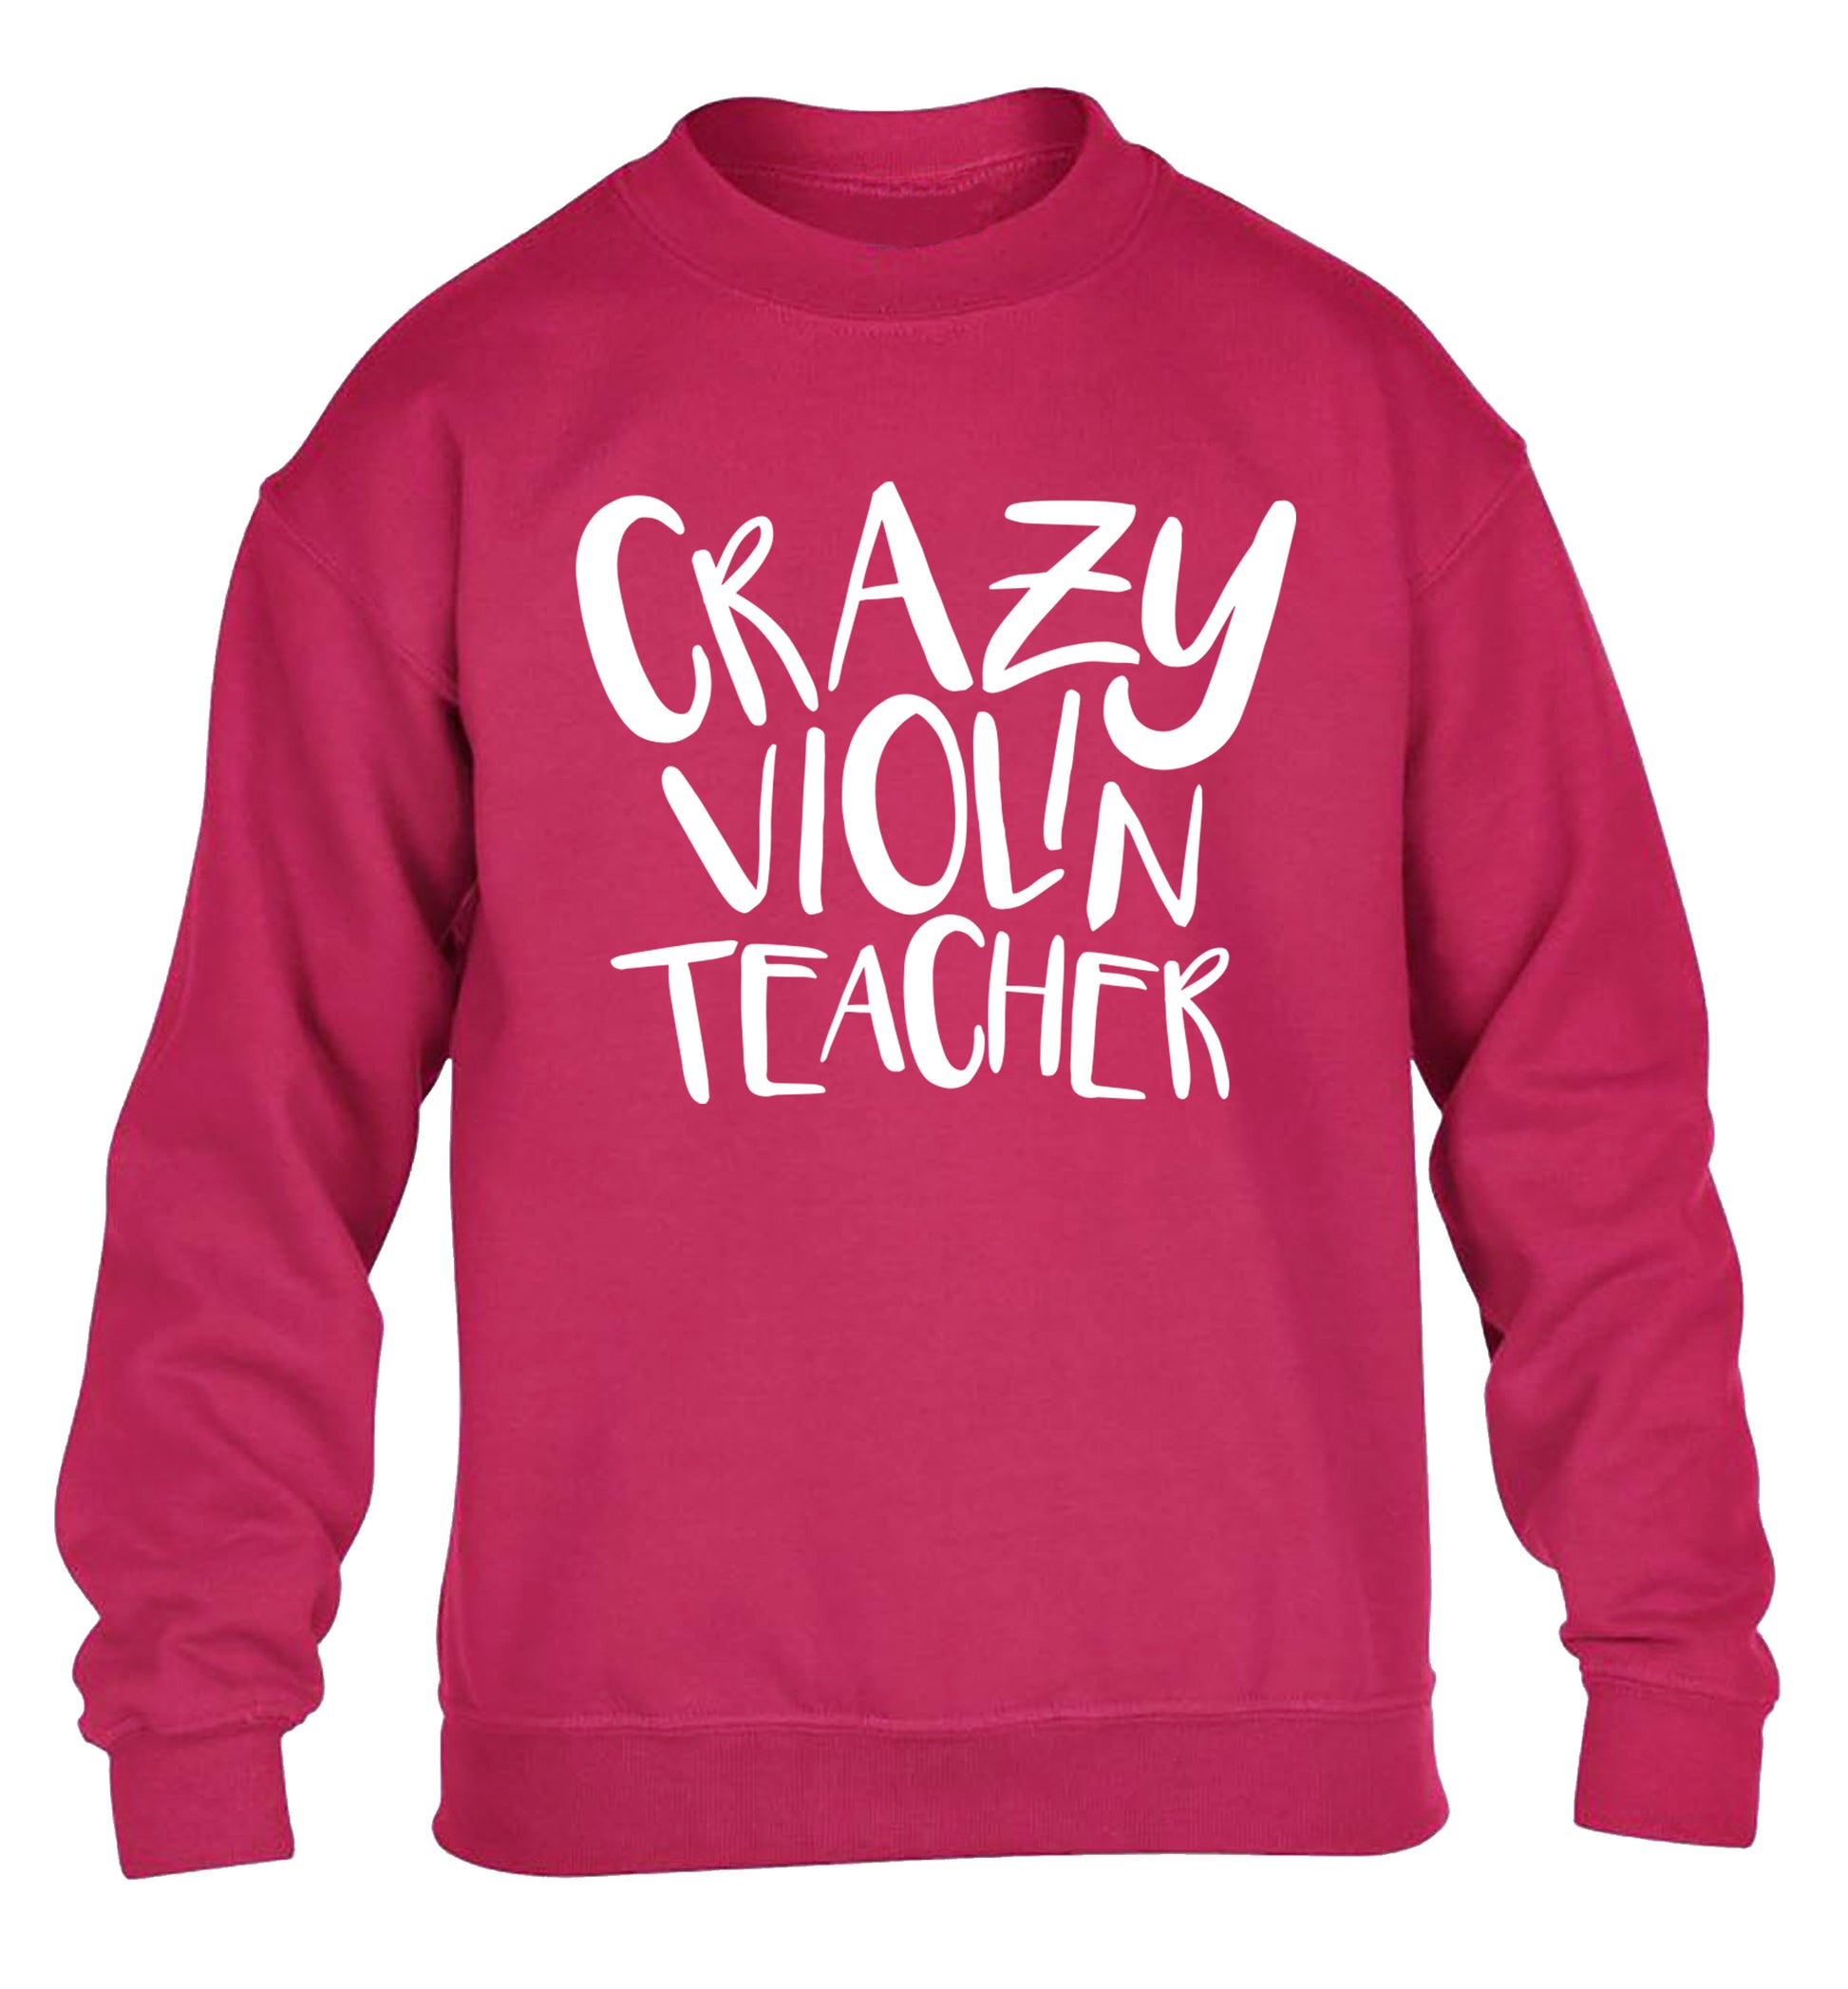 Crazy violin teacher children's pink sweater 12-13 Years